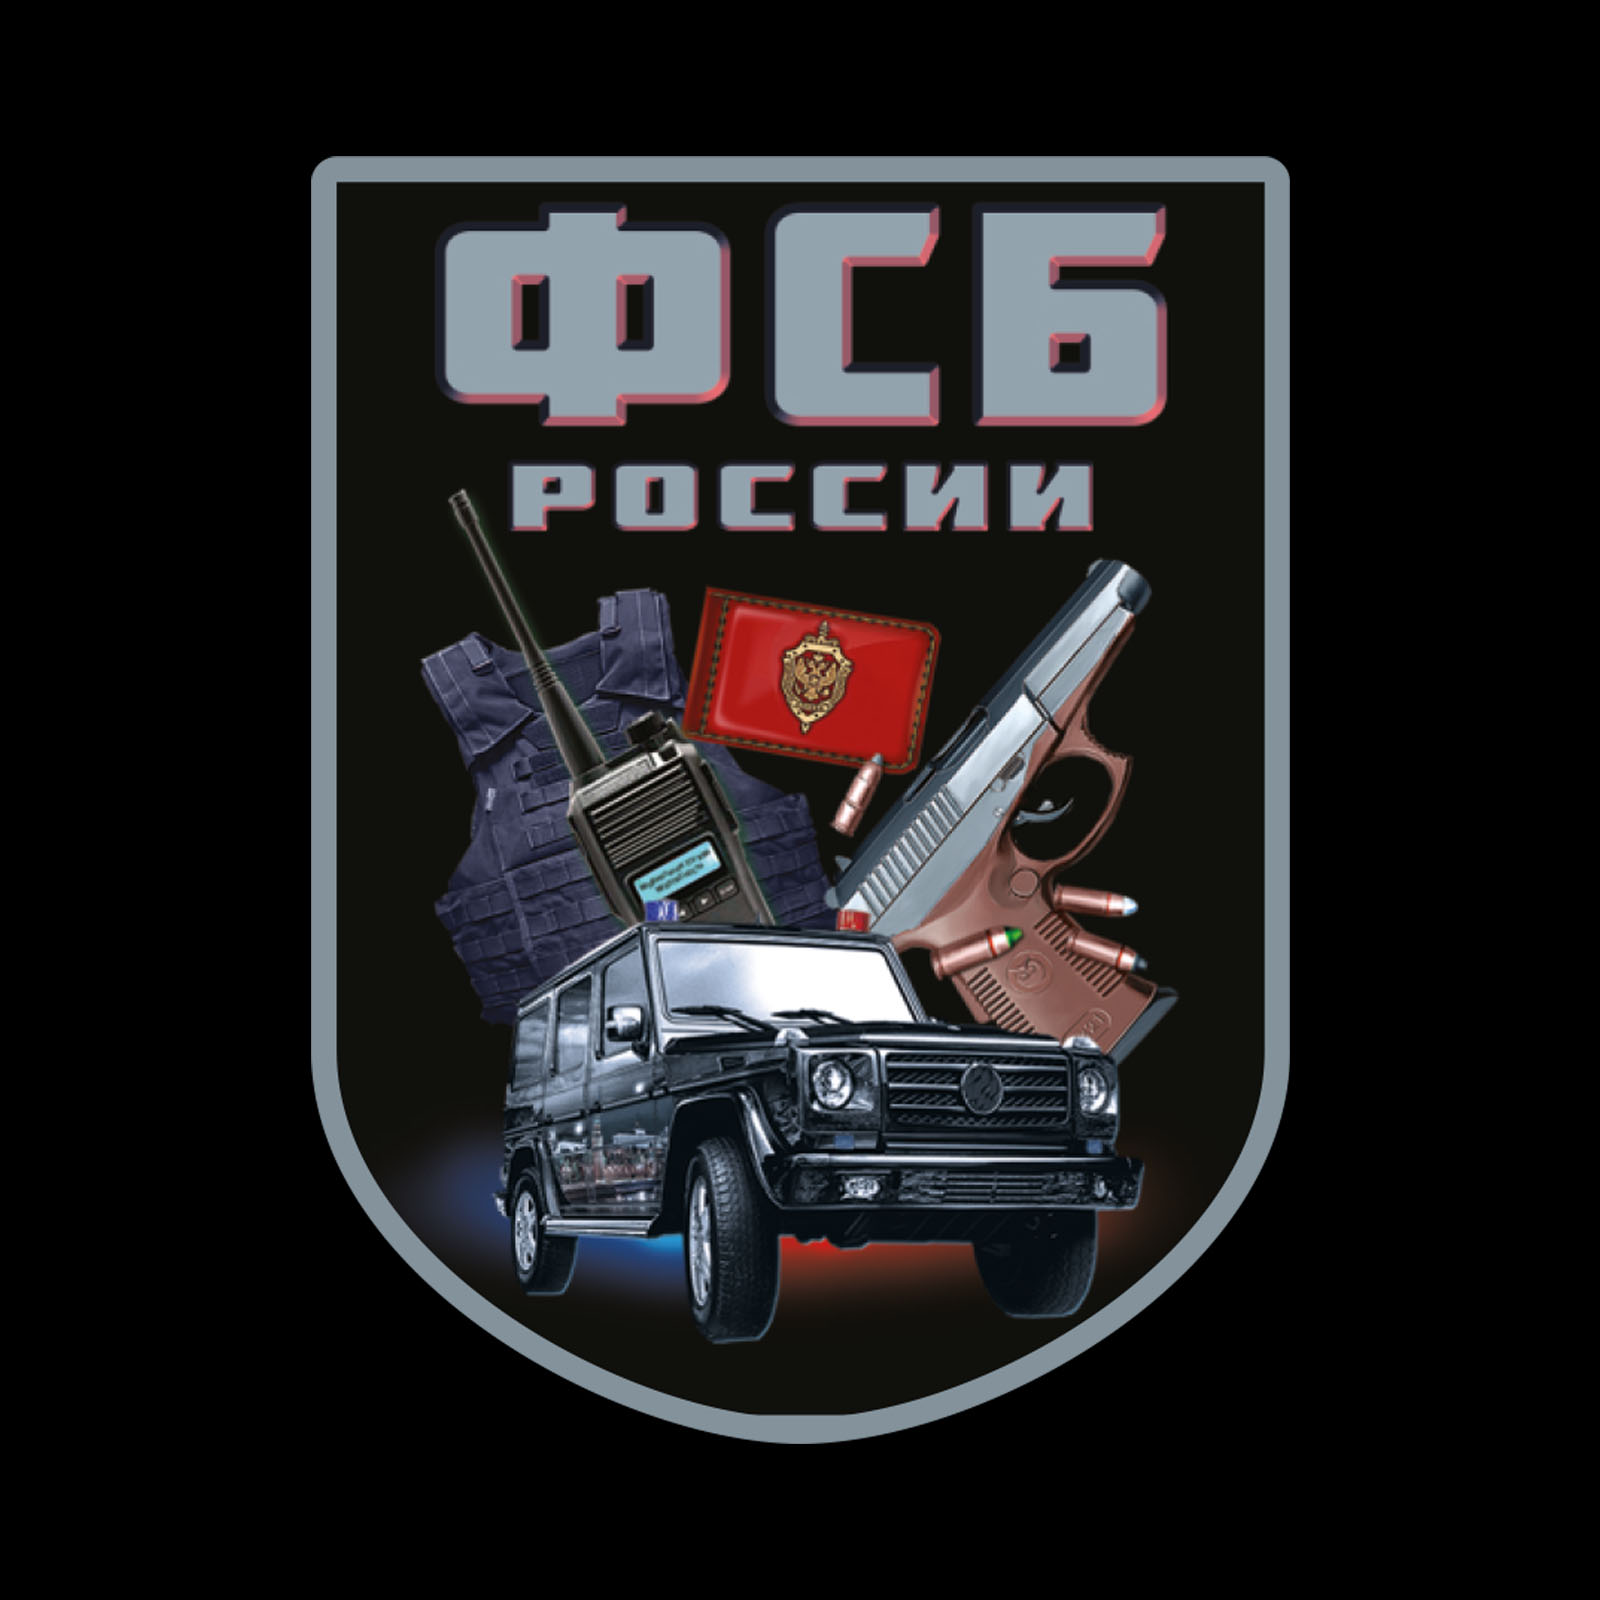 Чёрная футболка с термотрансфером "ФСБ России" 